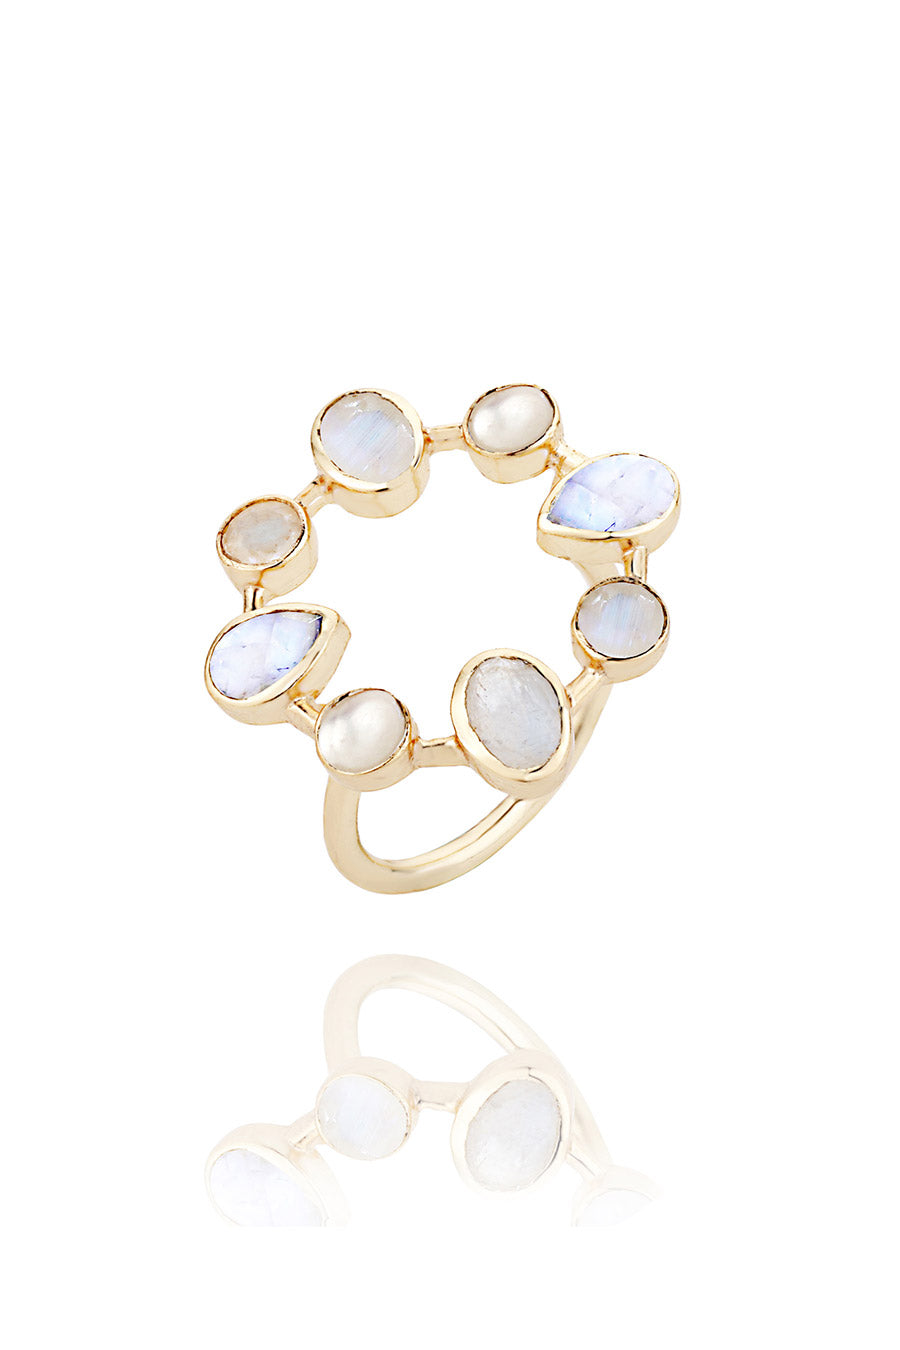 Moonstone & Pearl Circular Ring